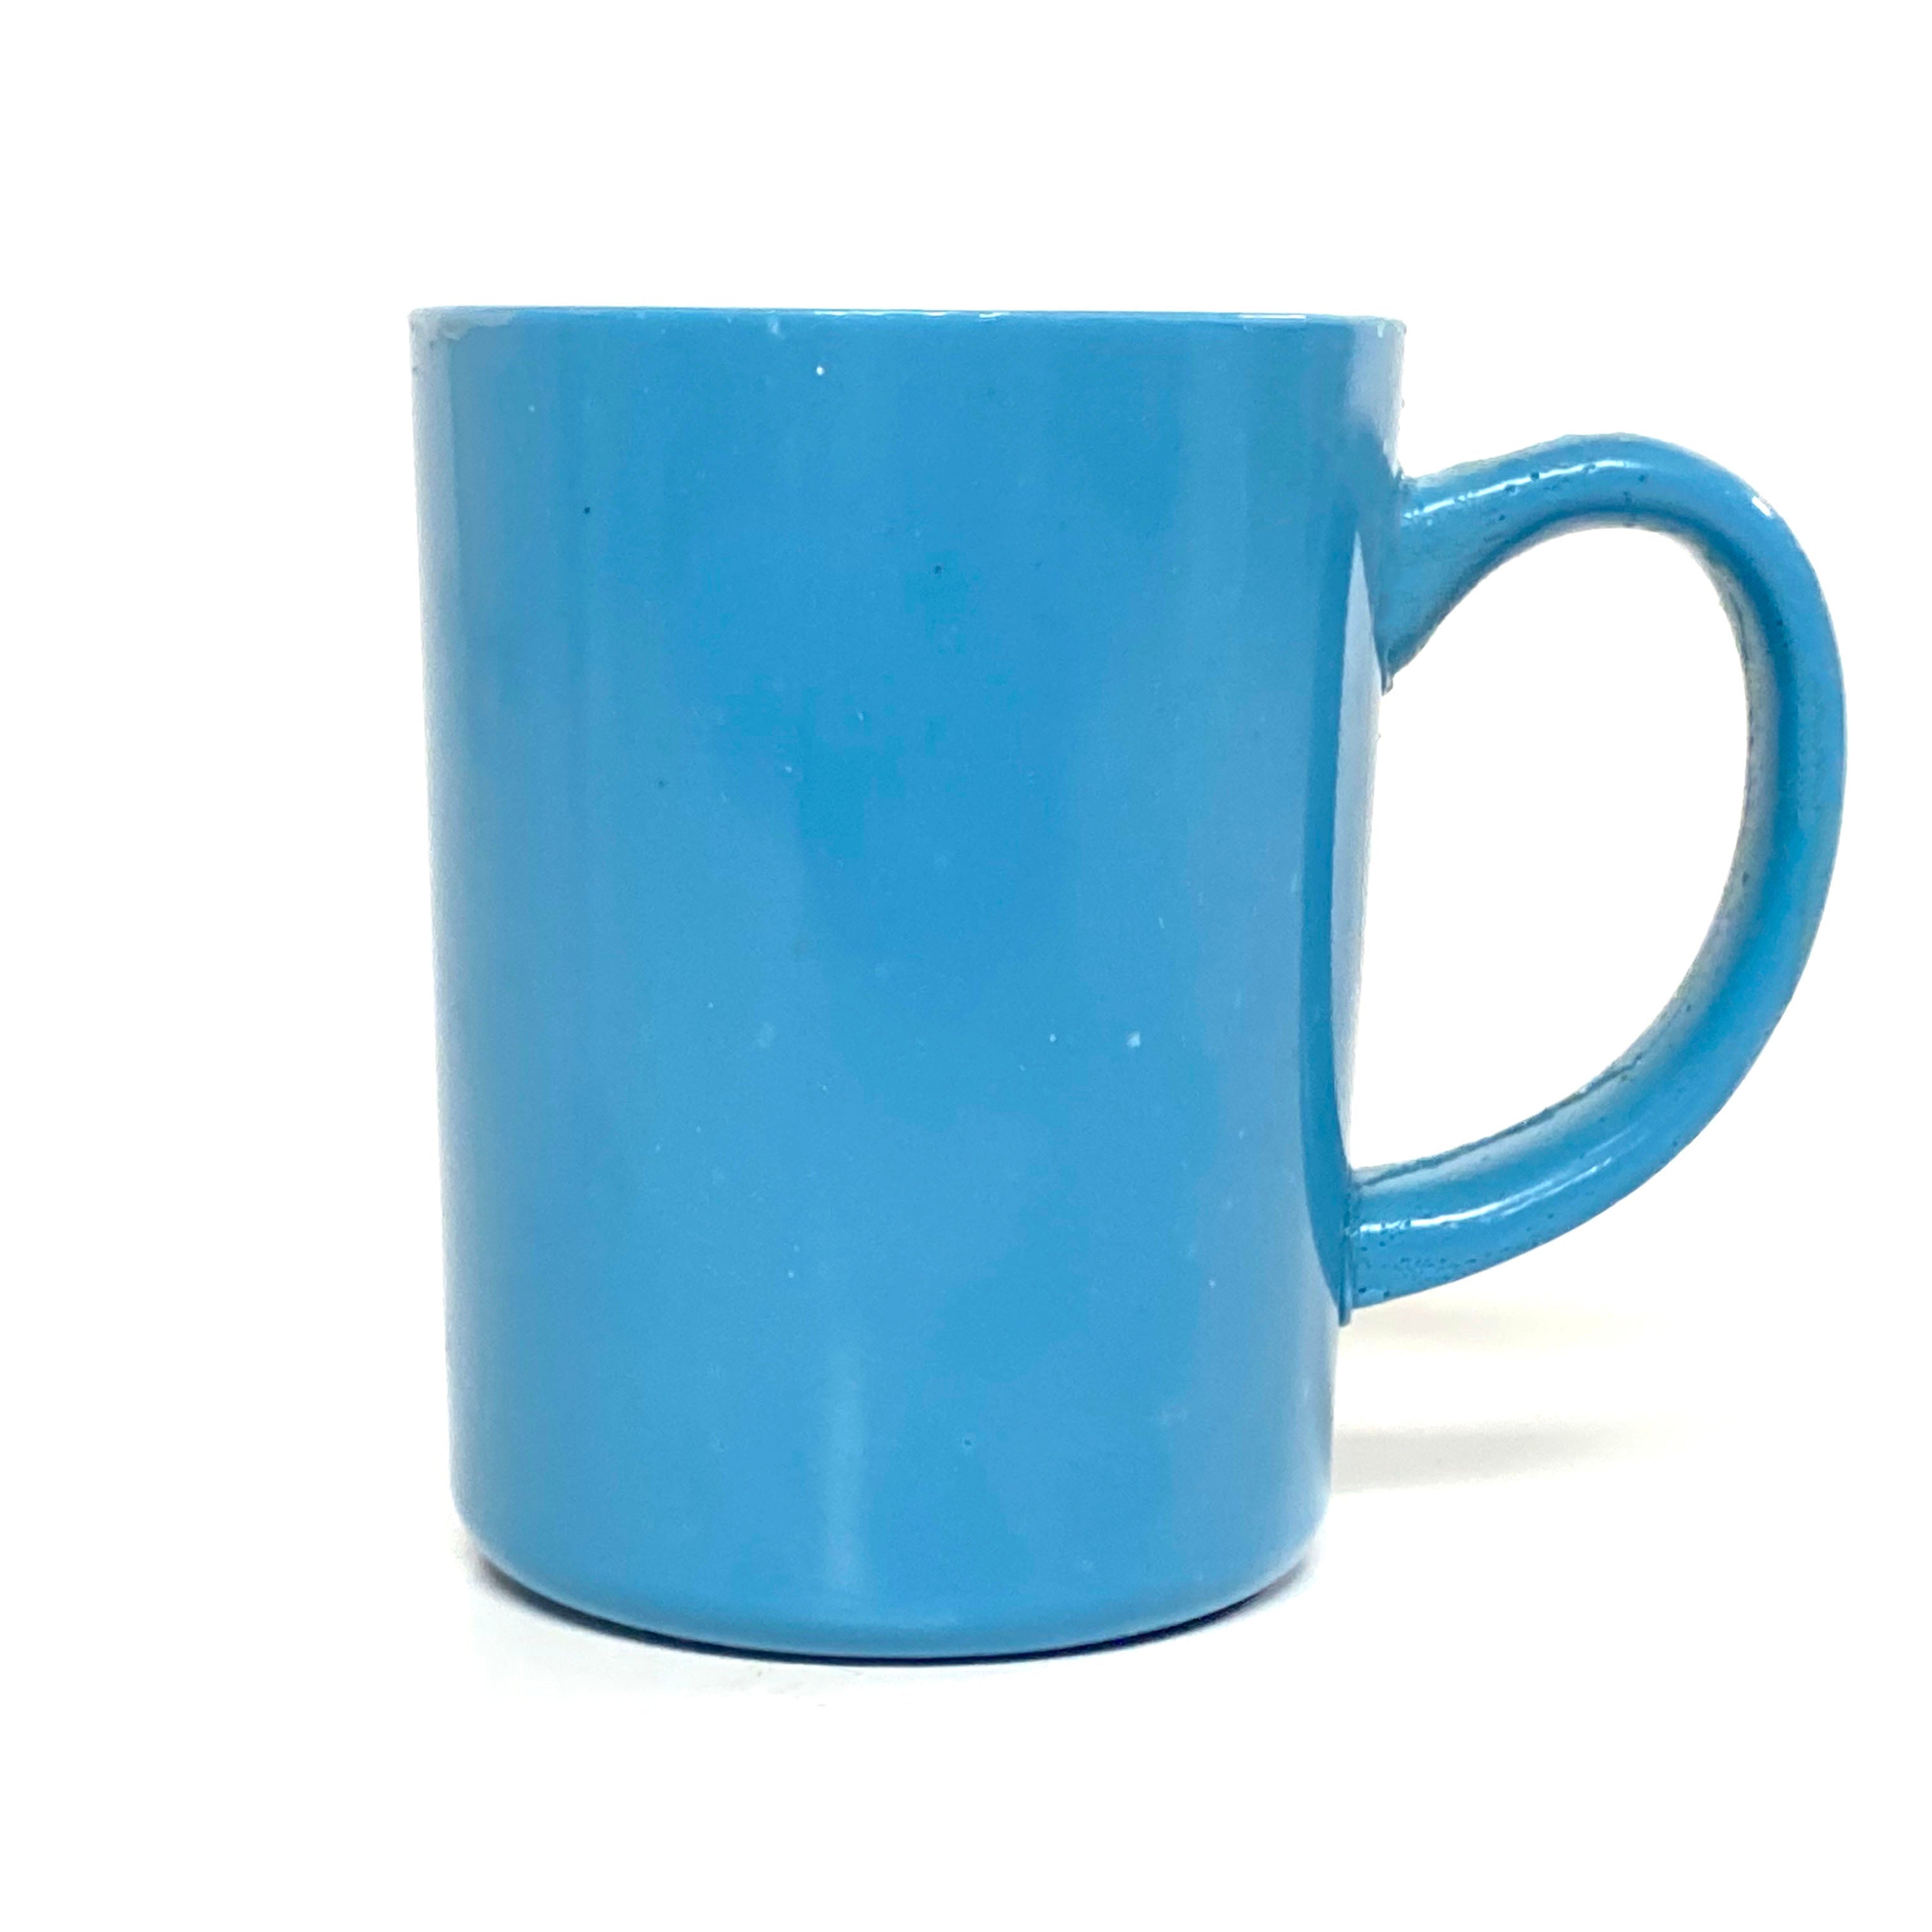 SMASHProps Breakaway Large Mug Prop - LIGHT BLUE opaque - Light Blue,Opaque